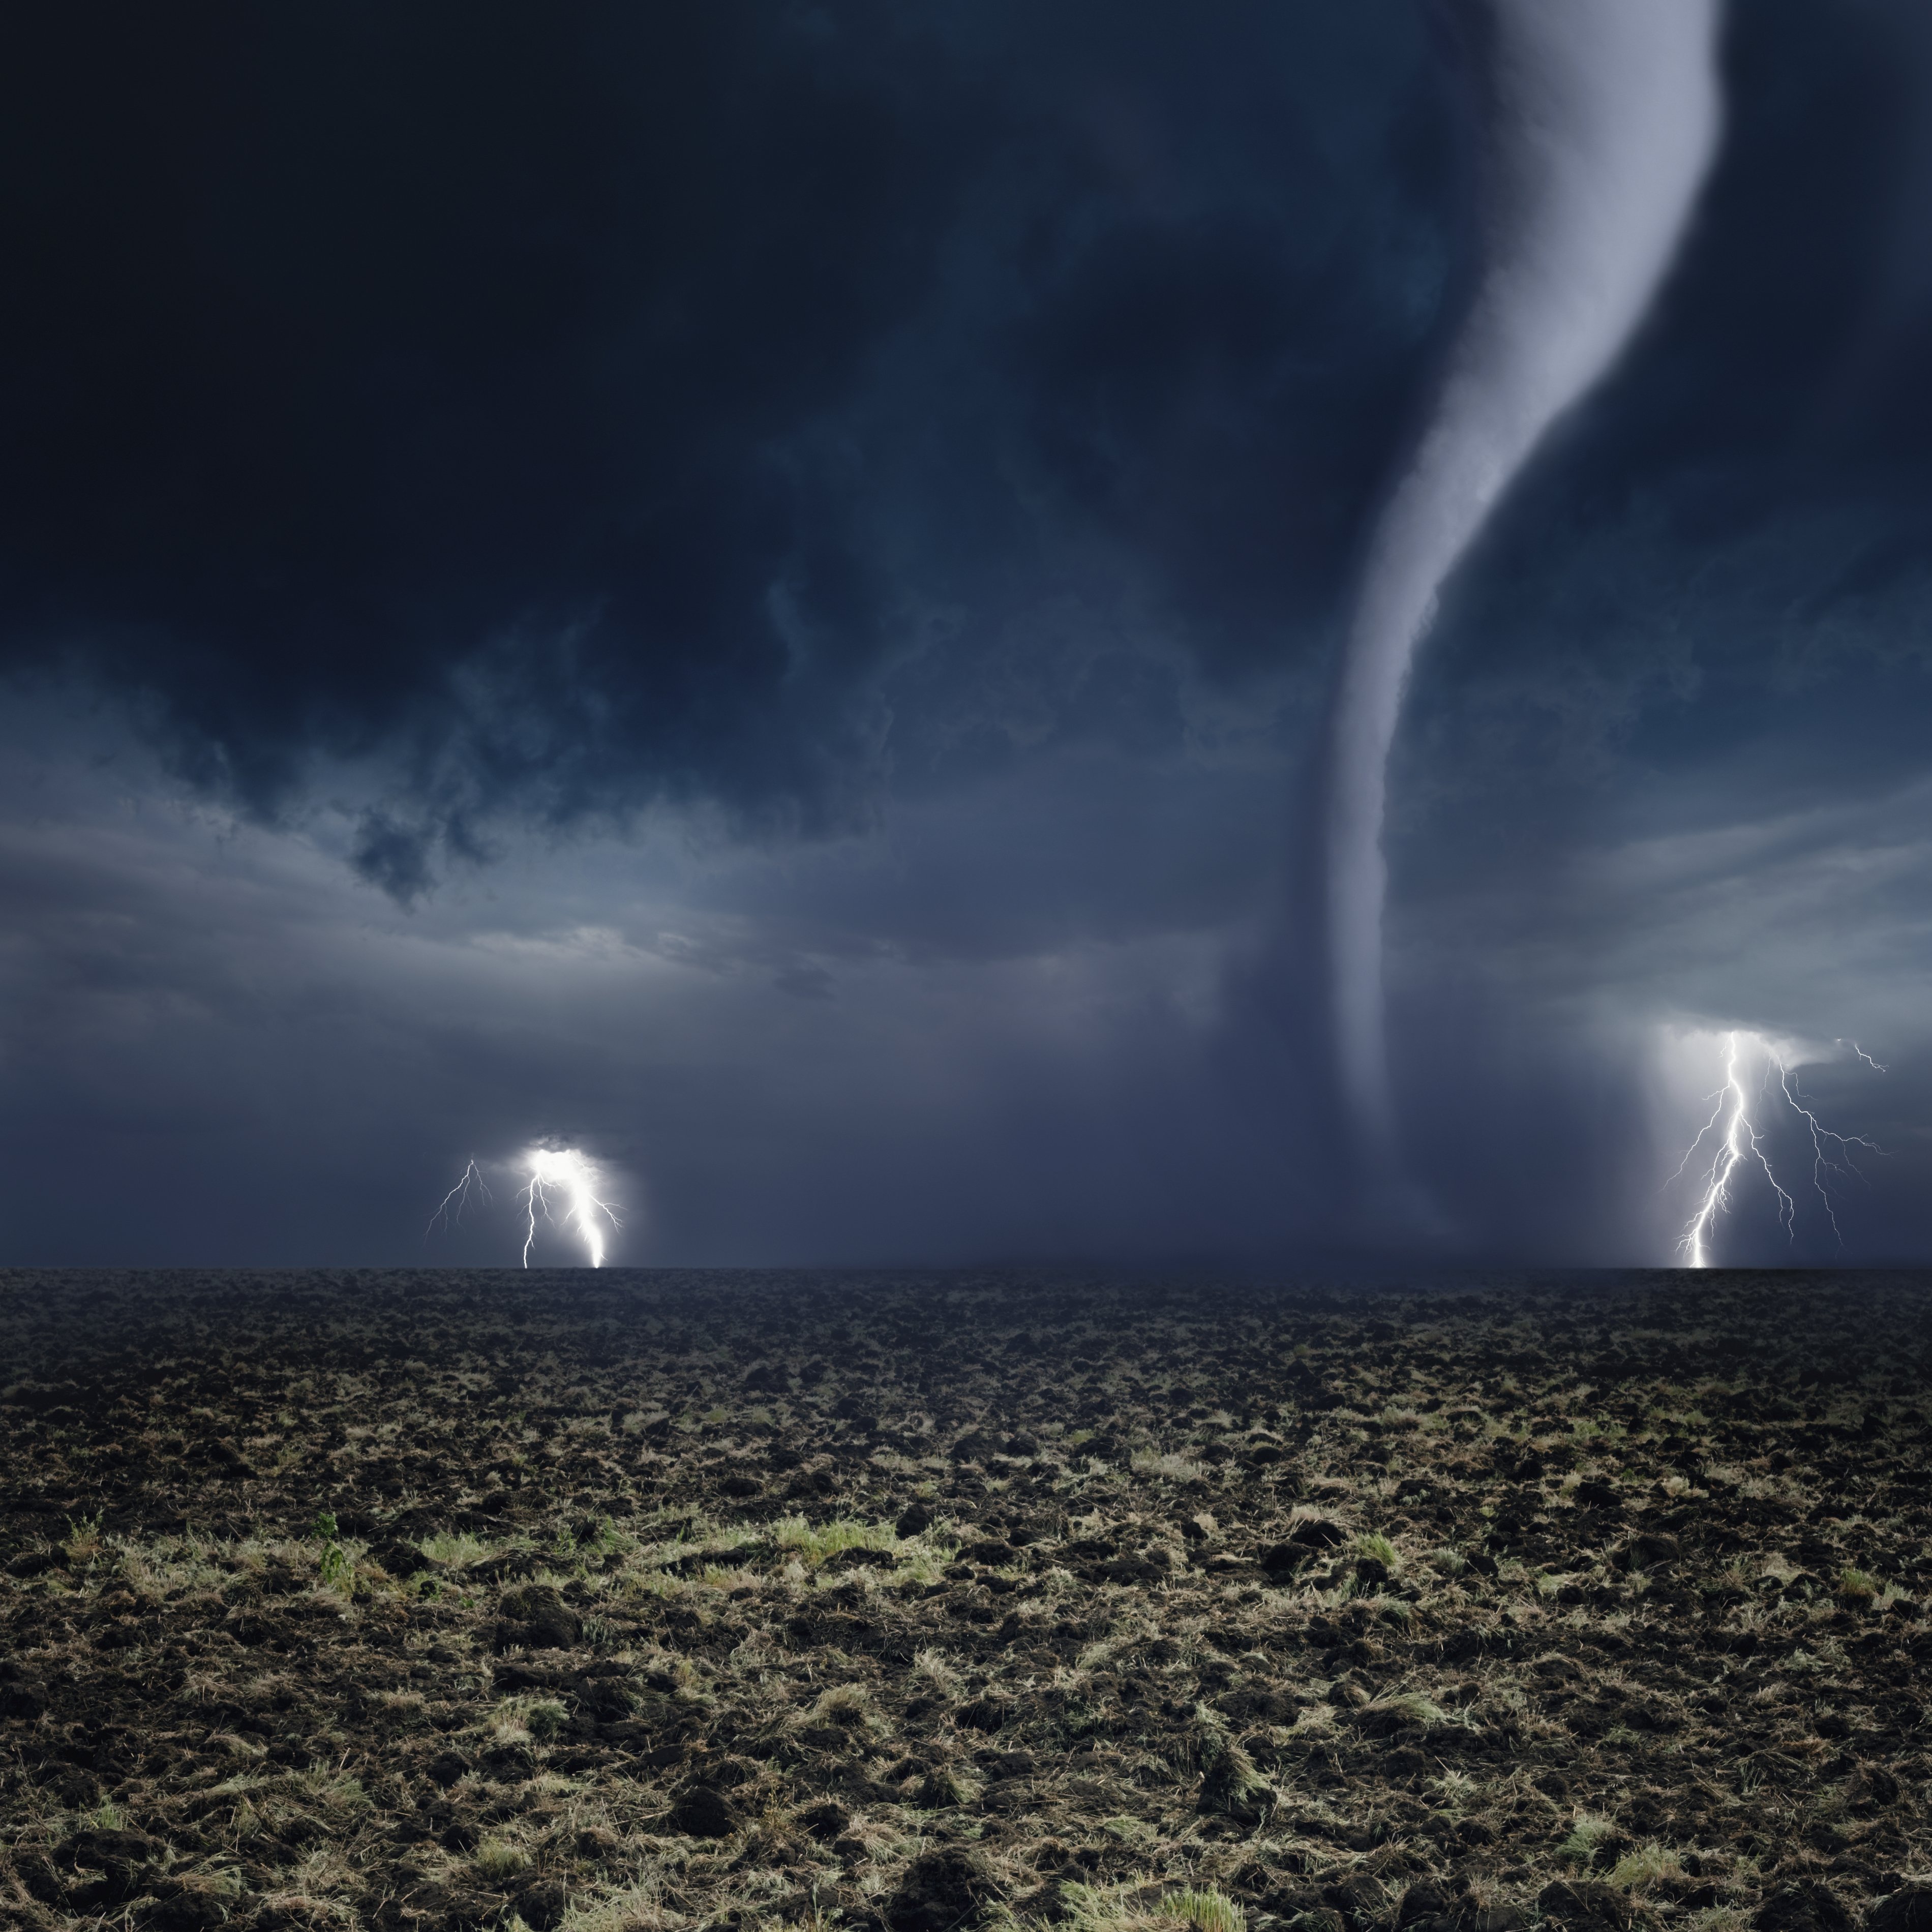 Tornado, lightning, farmland